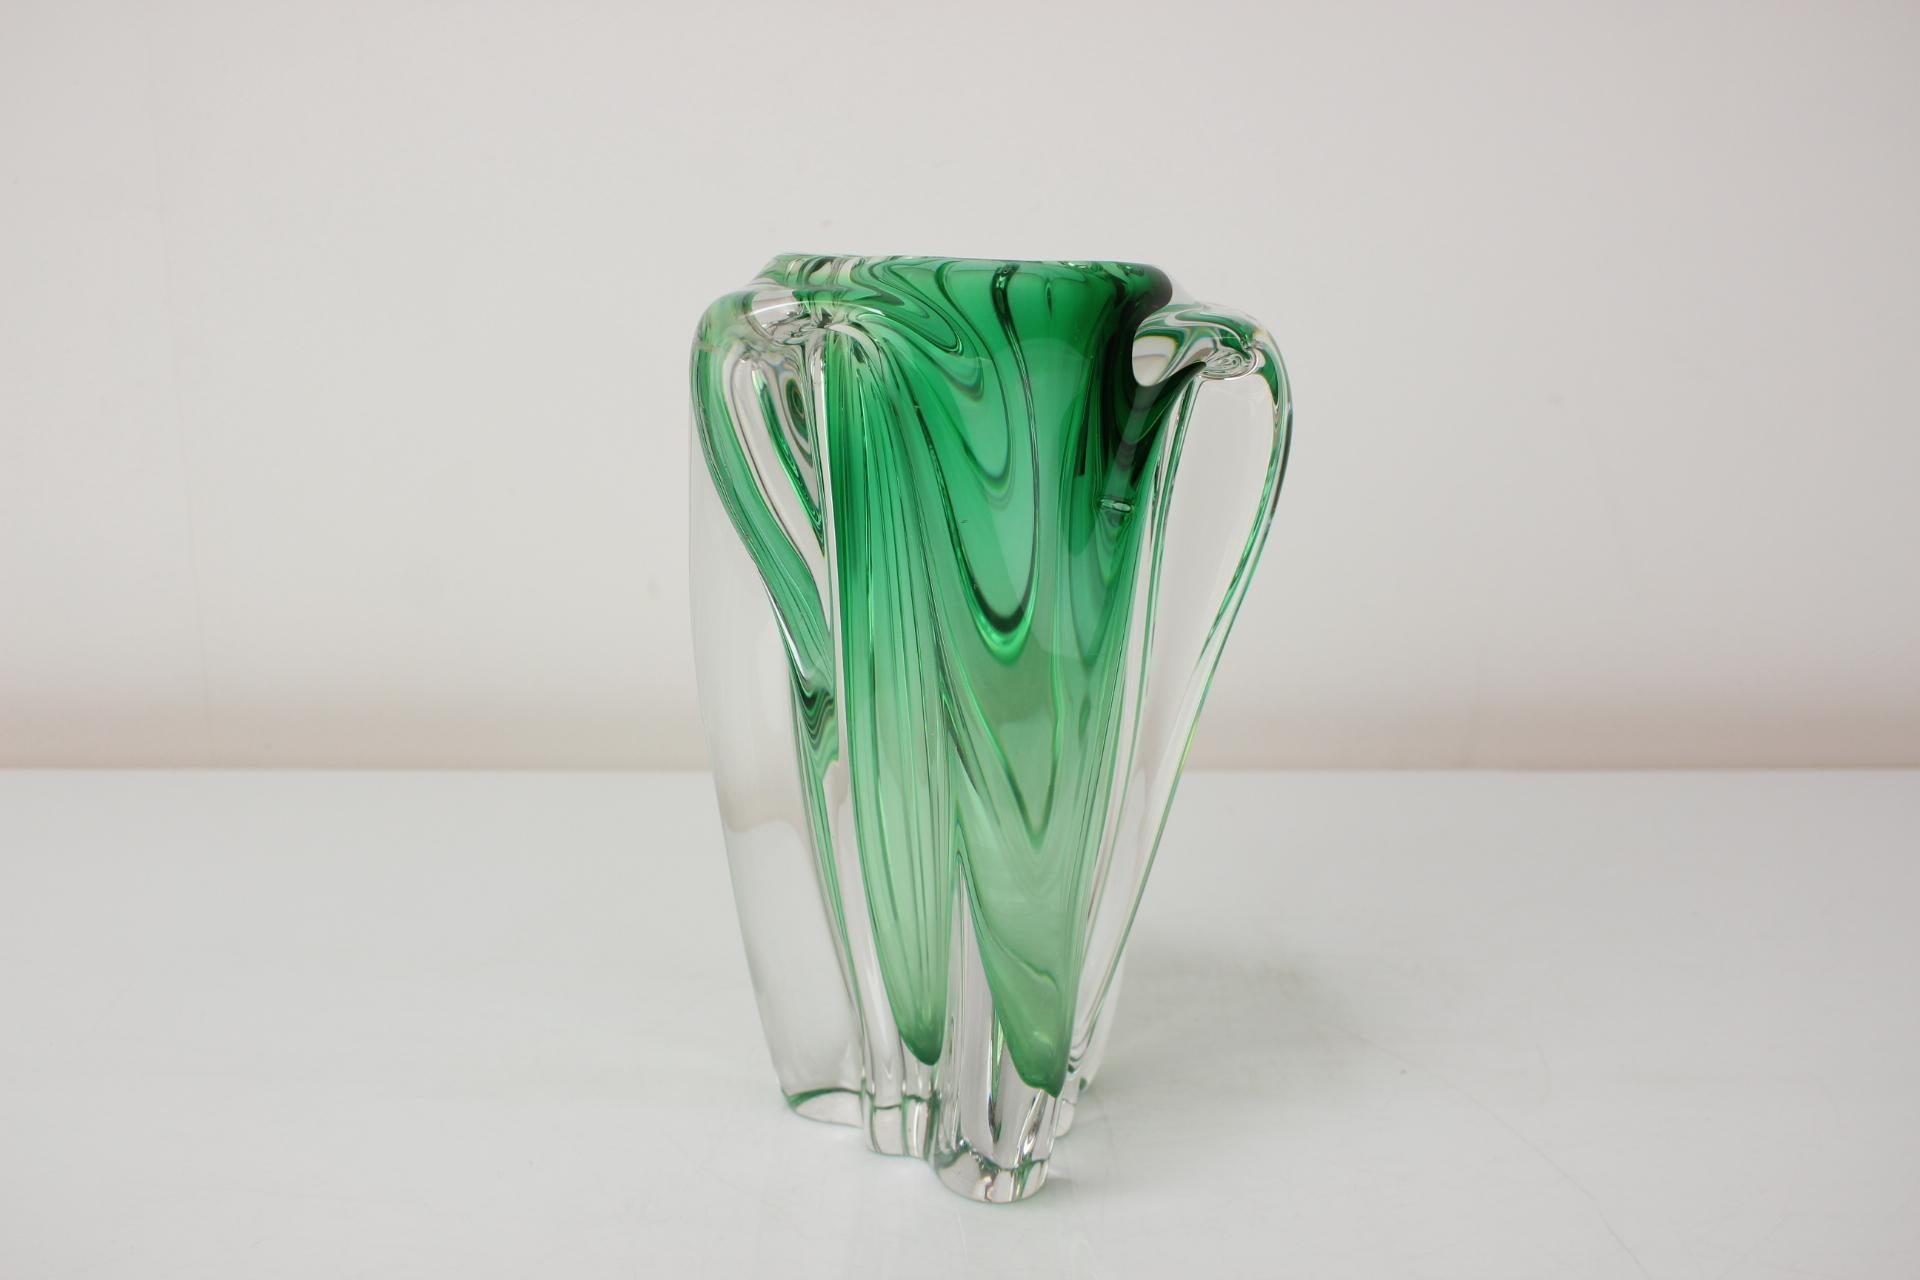 Czech Mid-Century Glass Vase Designed by Josef Hospodka, 1960's